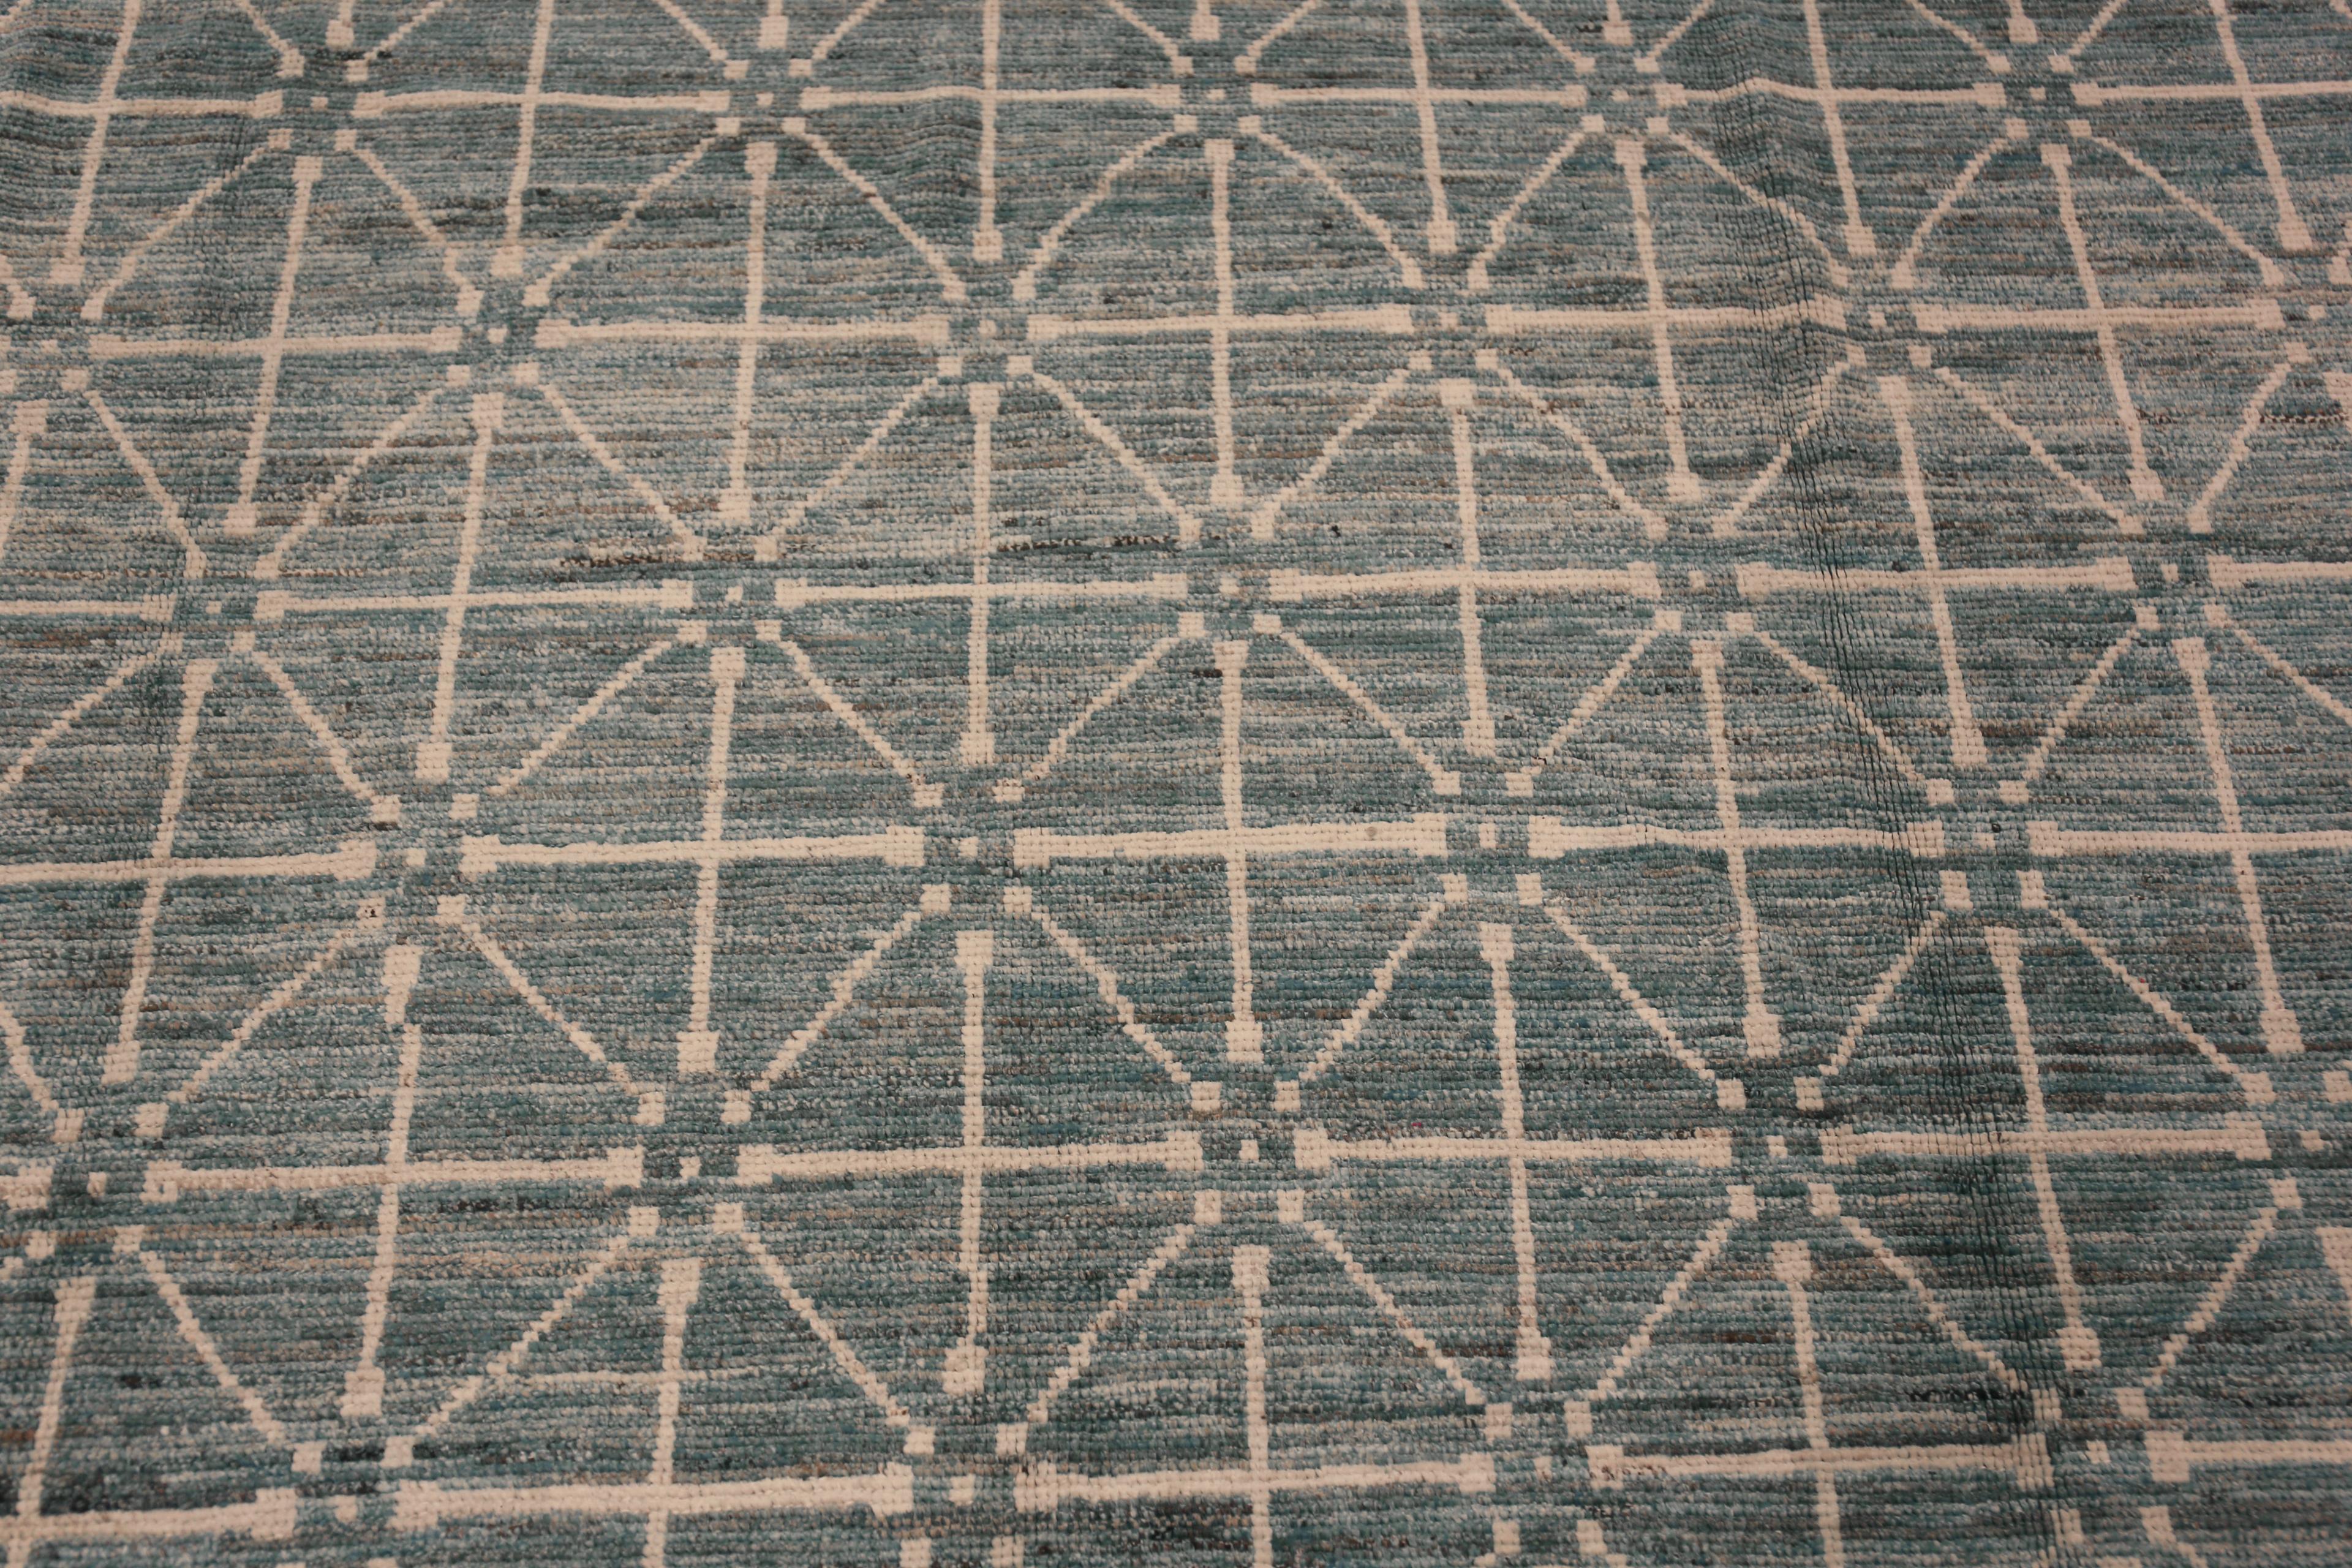 Centrasiatique Collection Nazmiyal - Tapis moderne de couleur grise et bleue sur toute la surface 9'5